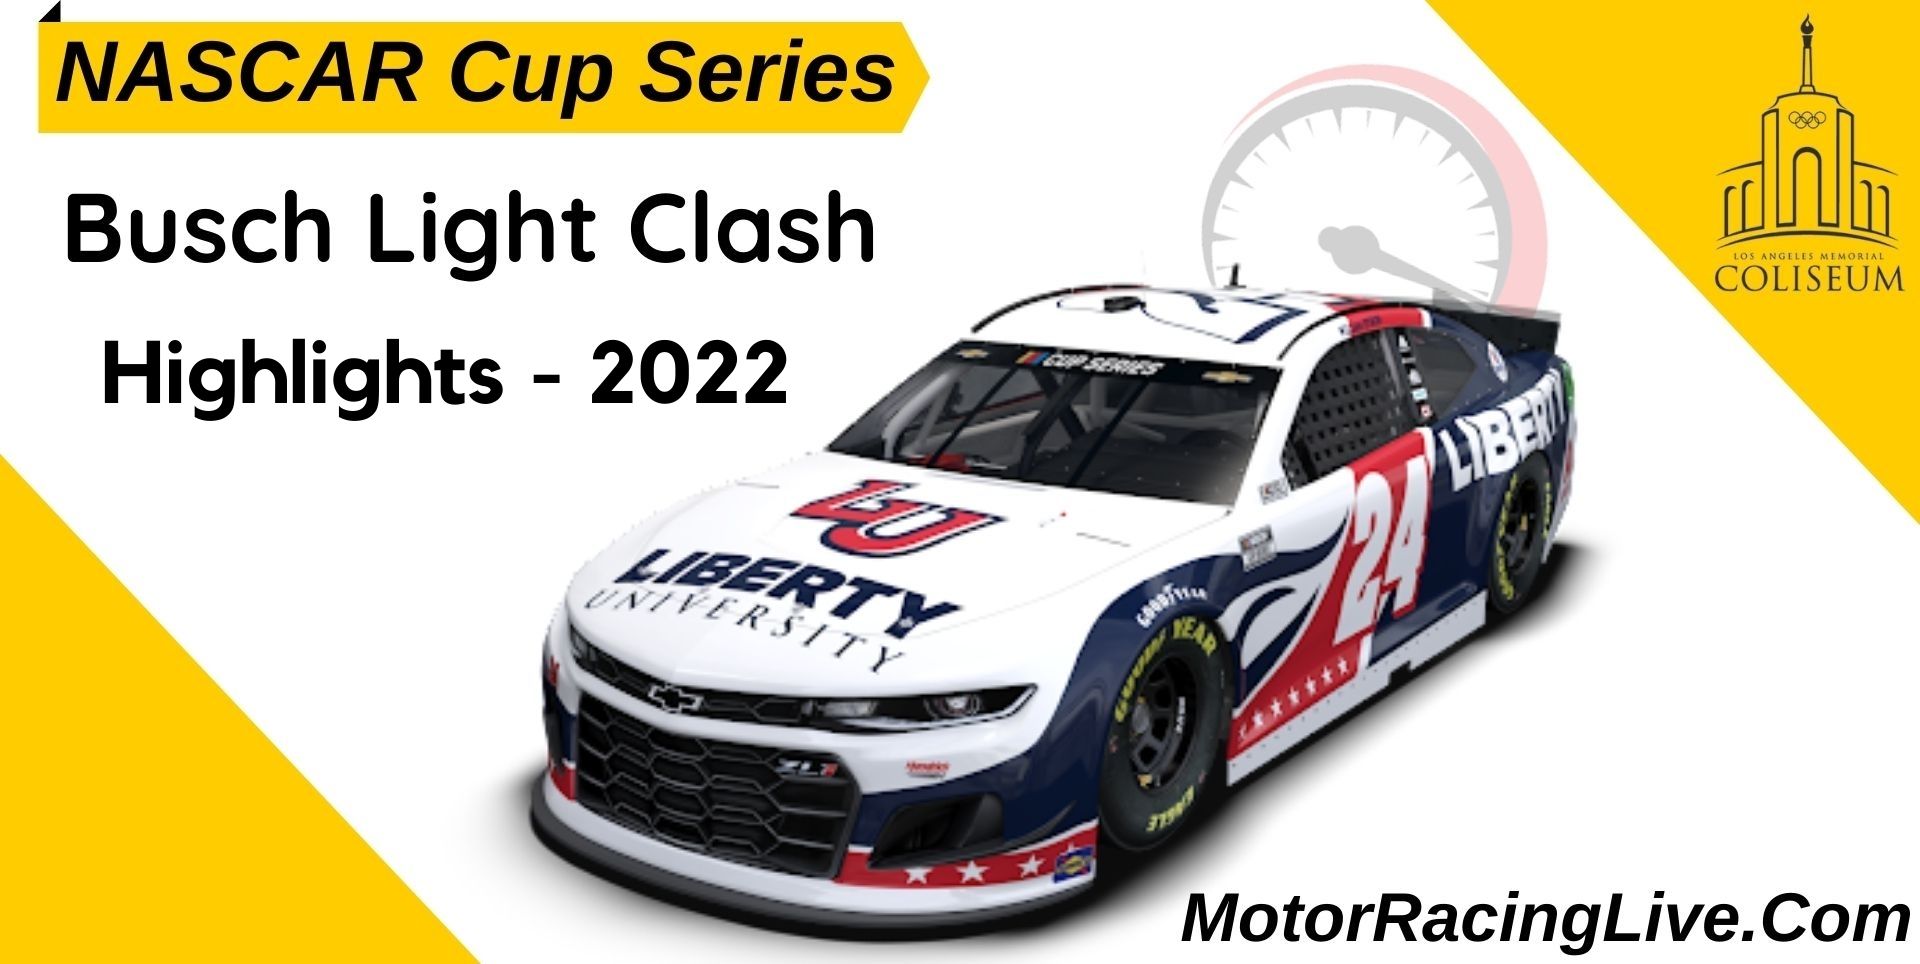 Busch Light Clash Highlights 2022 Nascar Cup Series